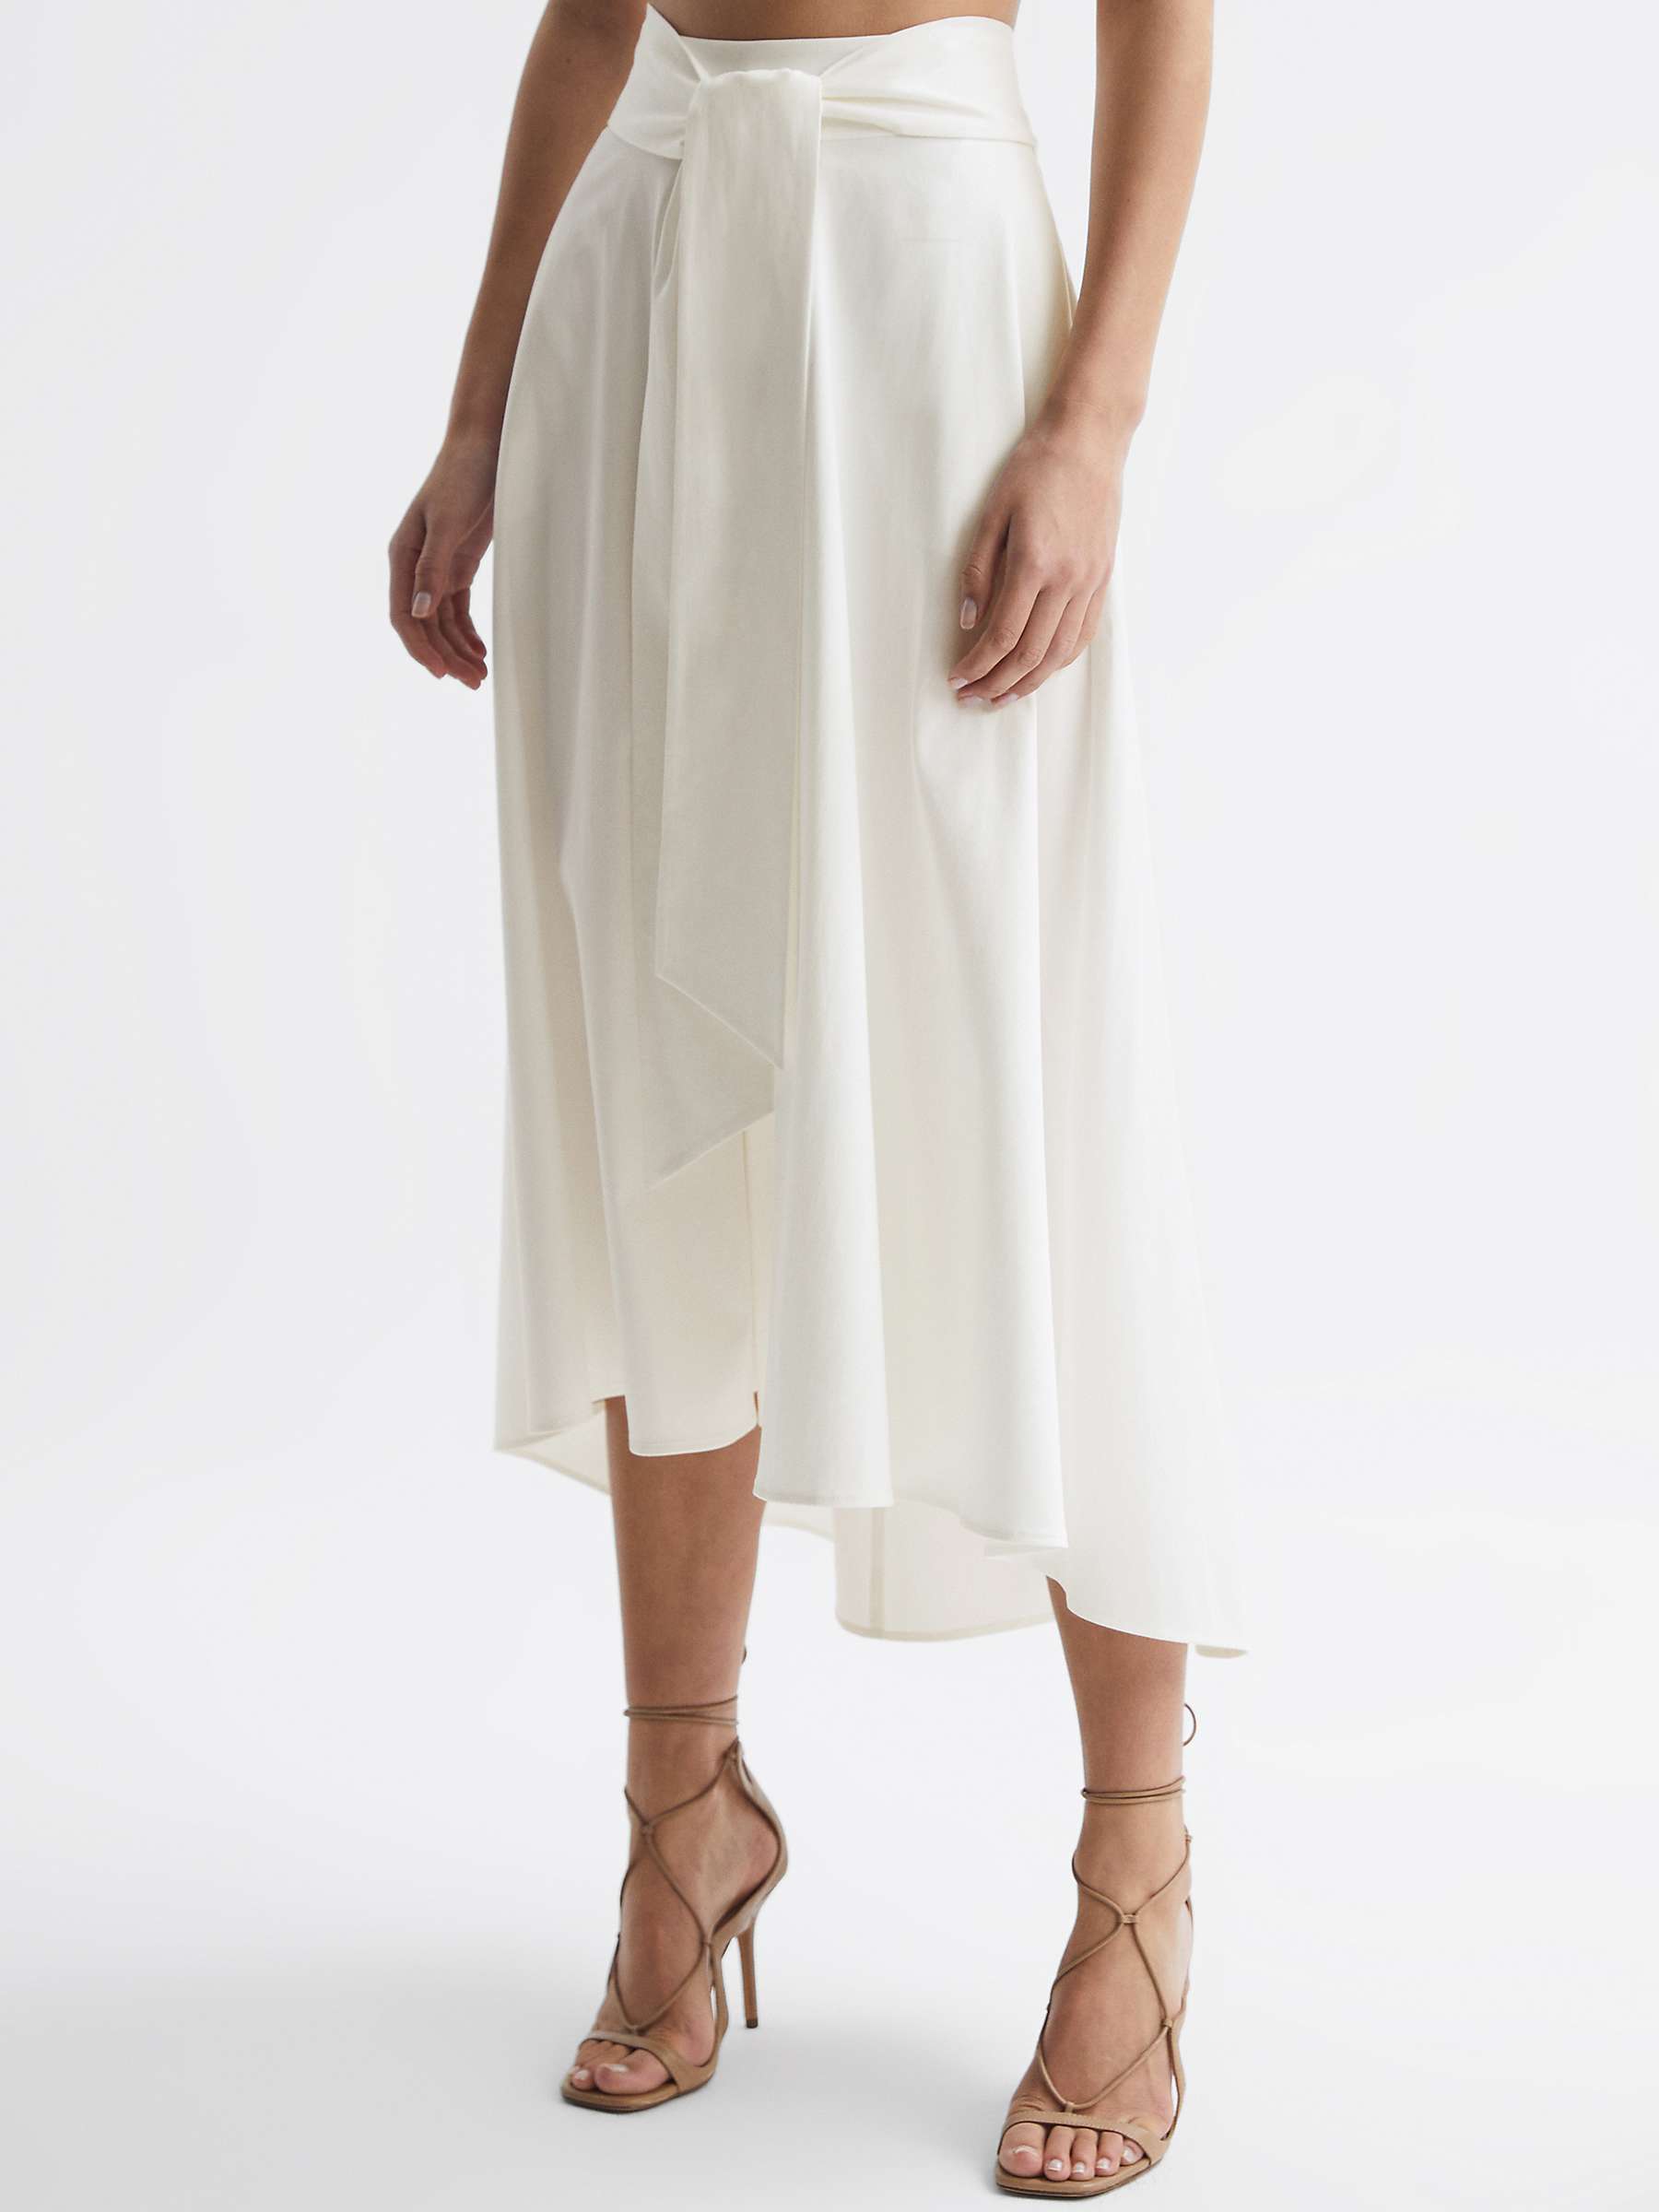 Reiss Rebecca Midi Flared Skirt, White at John Lewis & Partners